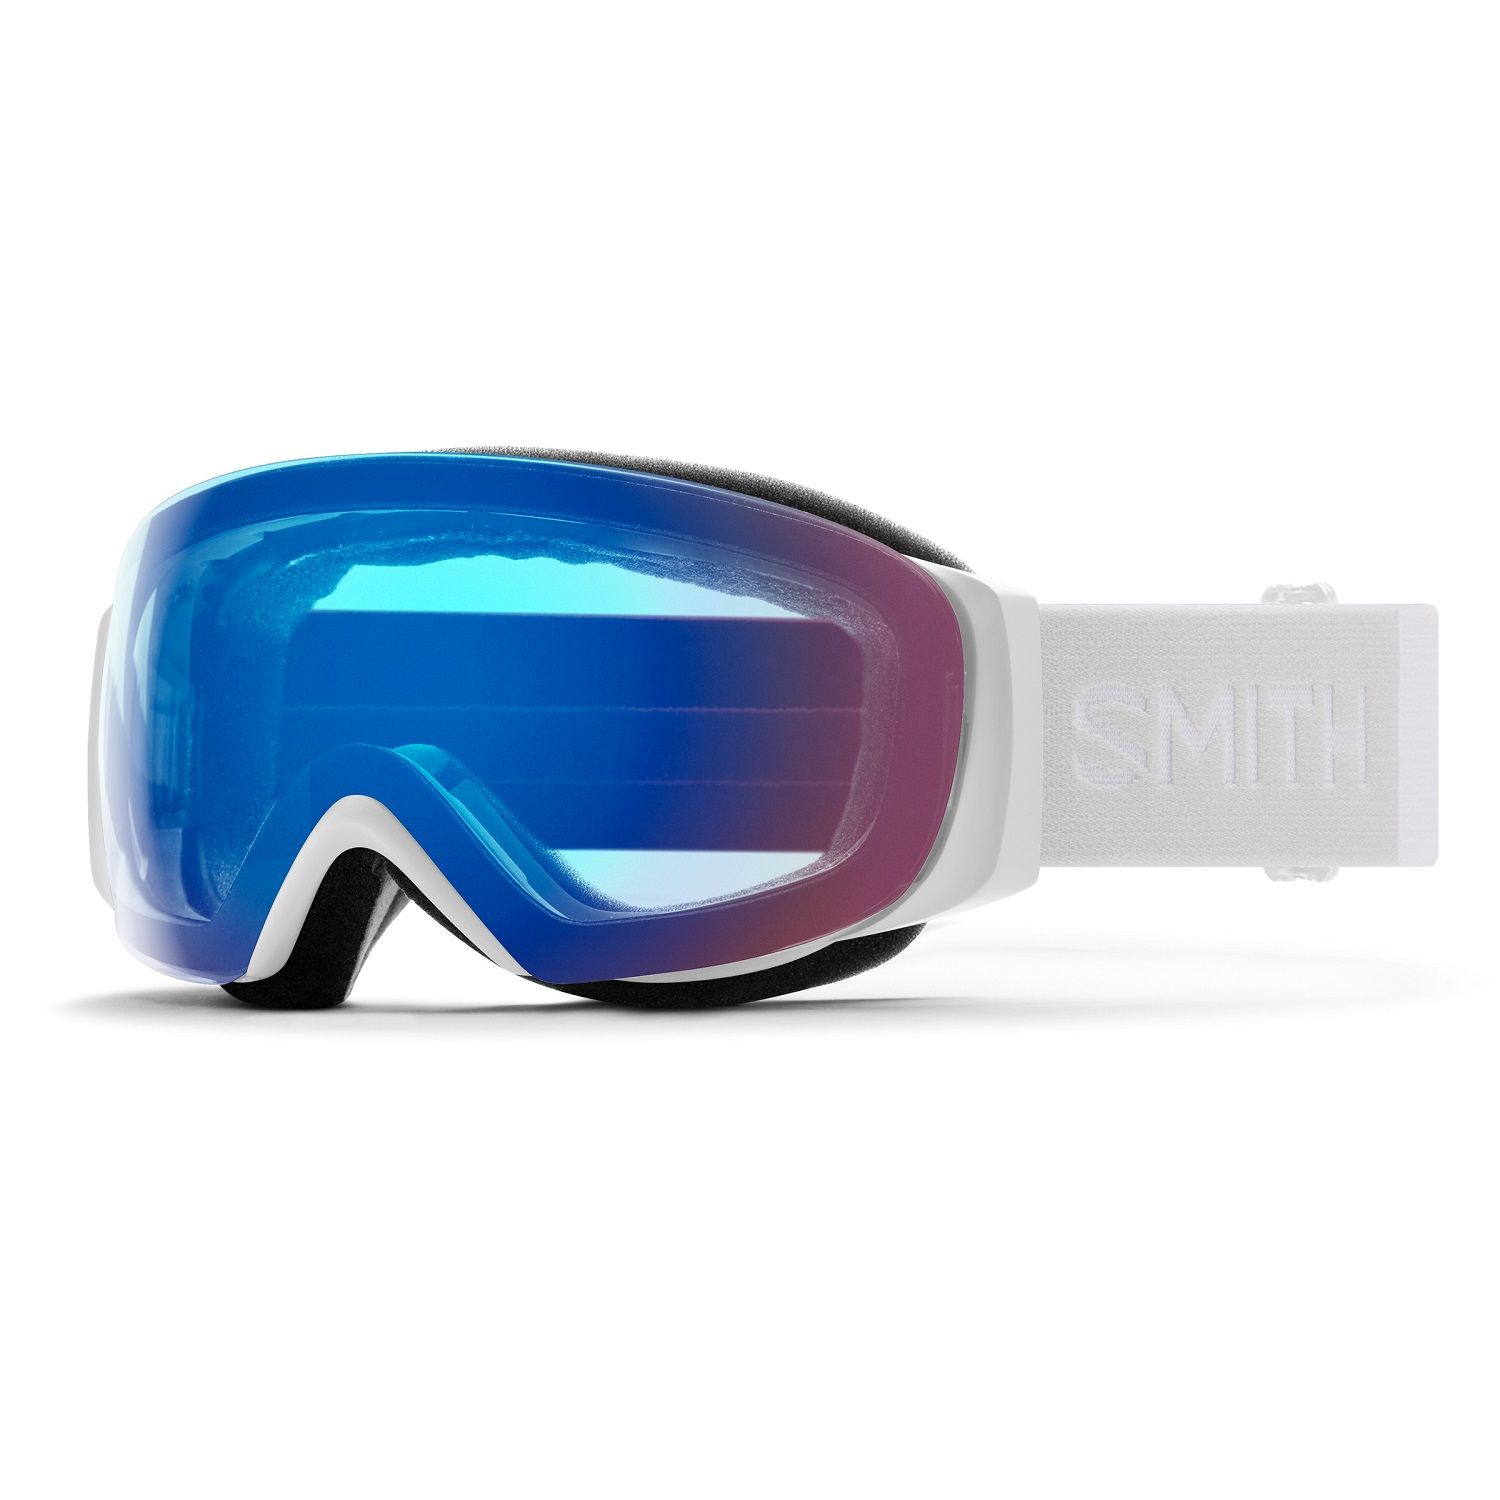 Billede af Smith I/O MAG S, skibriller, Black hos Skisport.dk